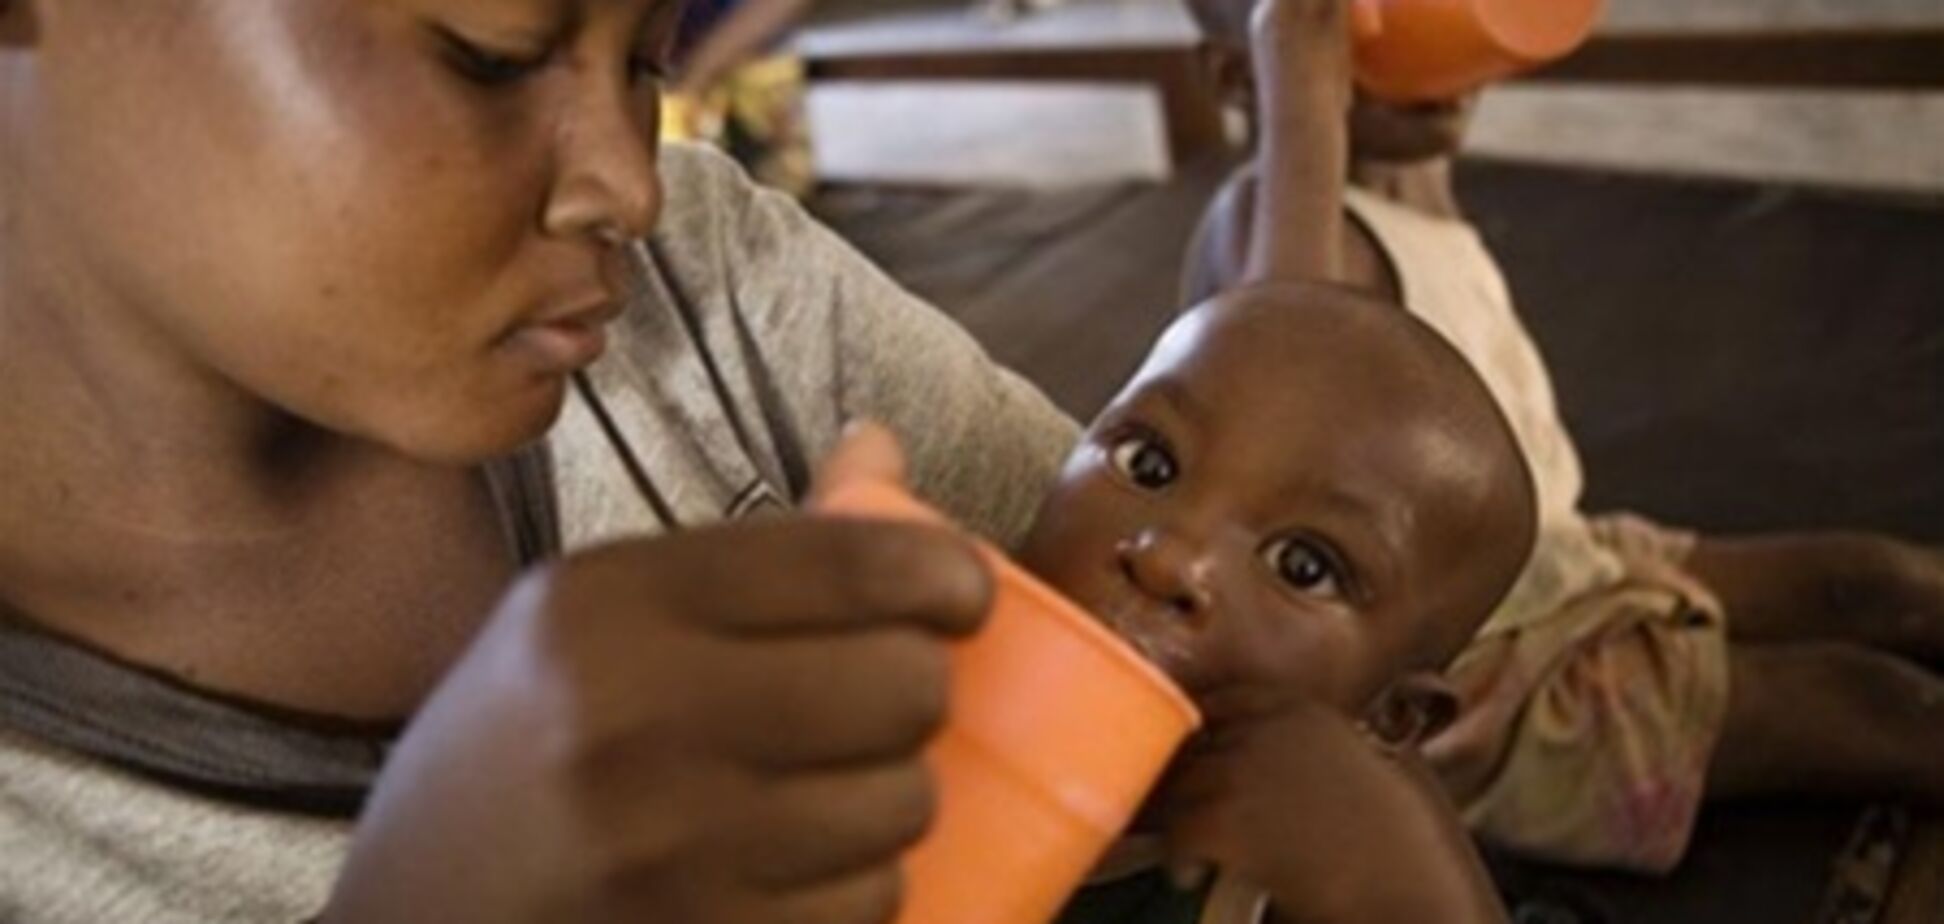 ООН: недоедание дорого обходится мировой экономике